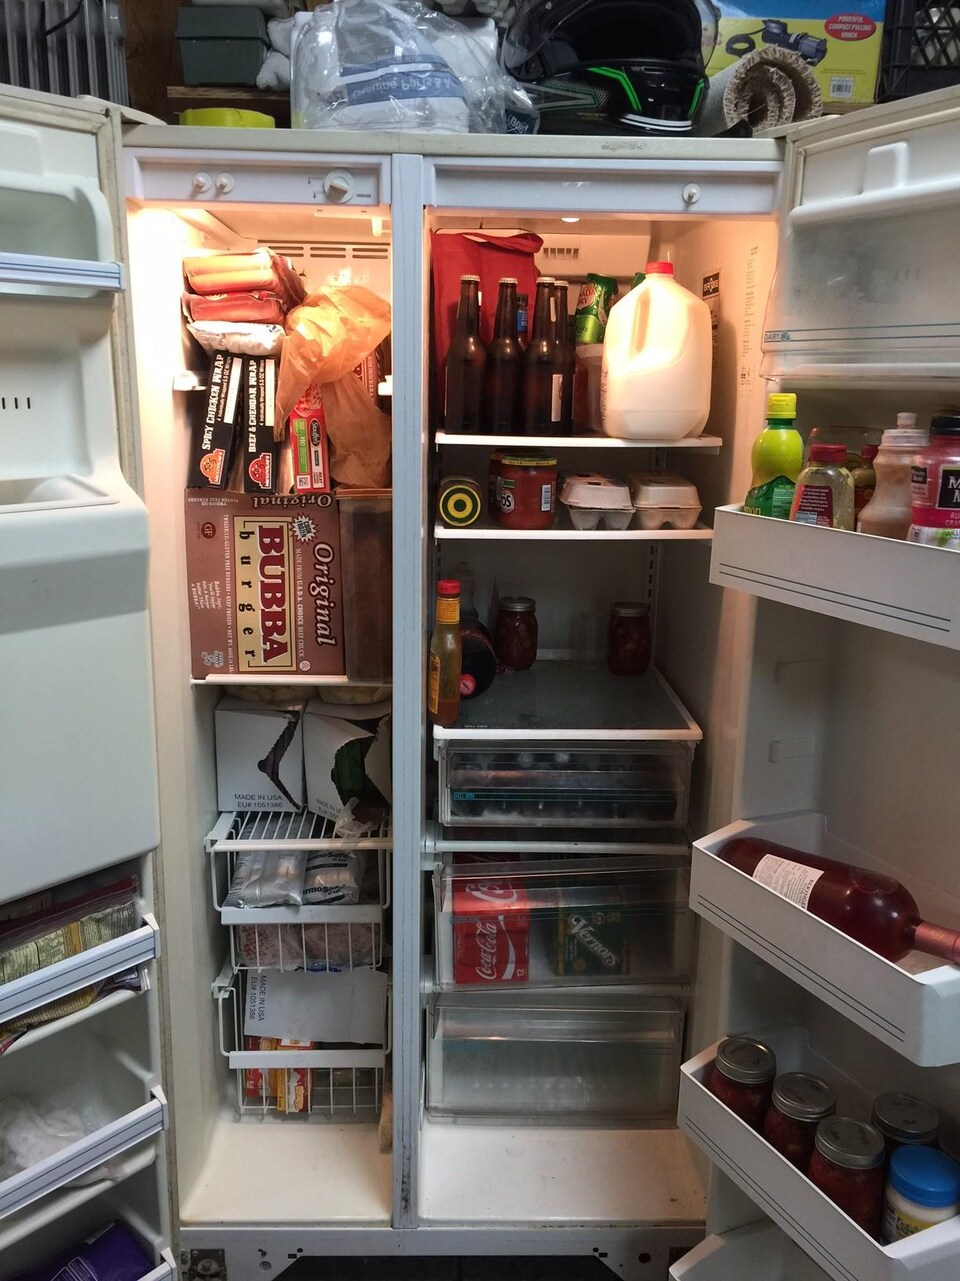 Un réfrigérateur qui semble plein et qui est notamment rempli de condiments, de bouteilles de bière et de vin, d'oeufs et de lait.